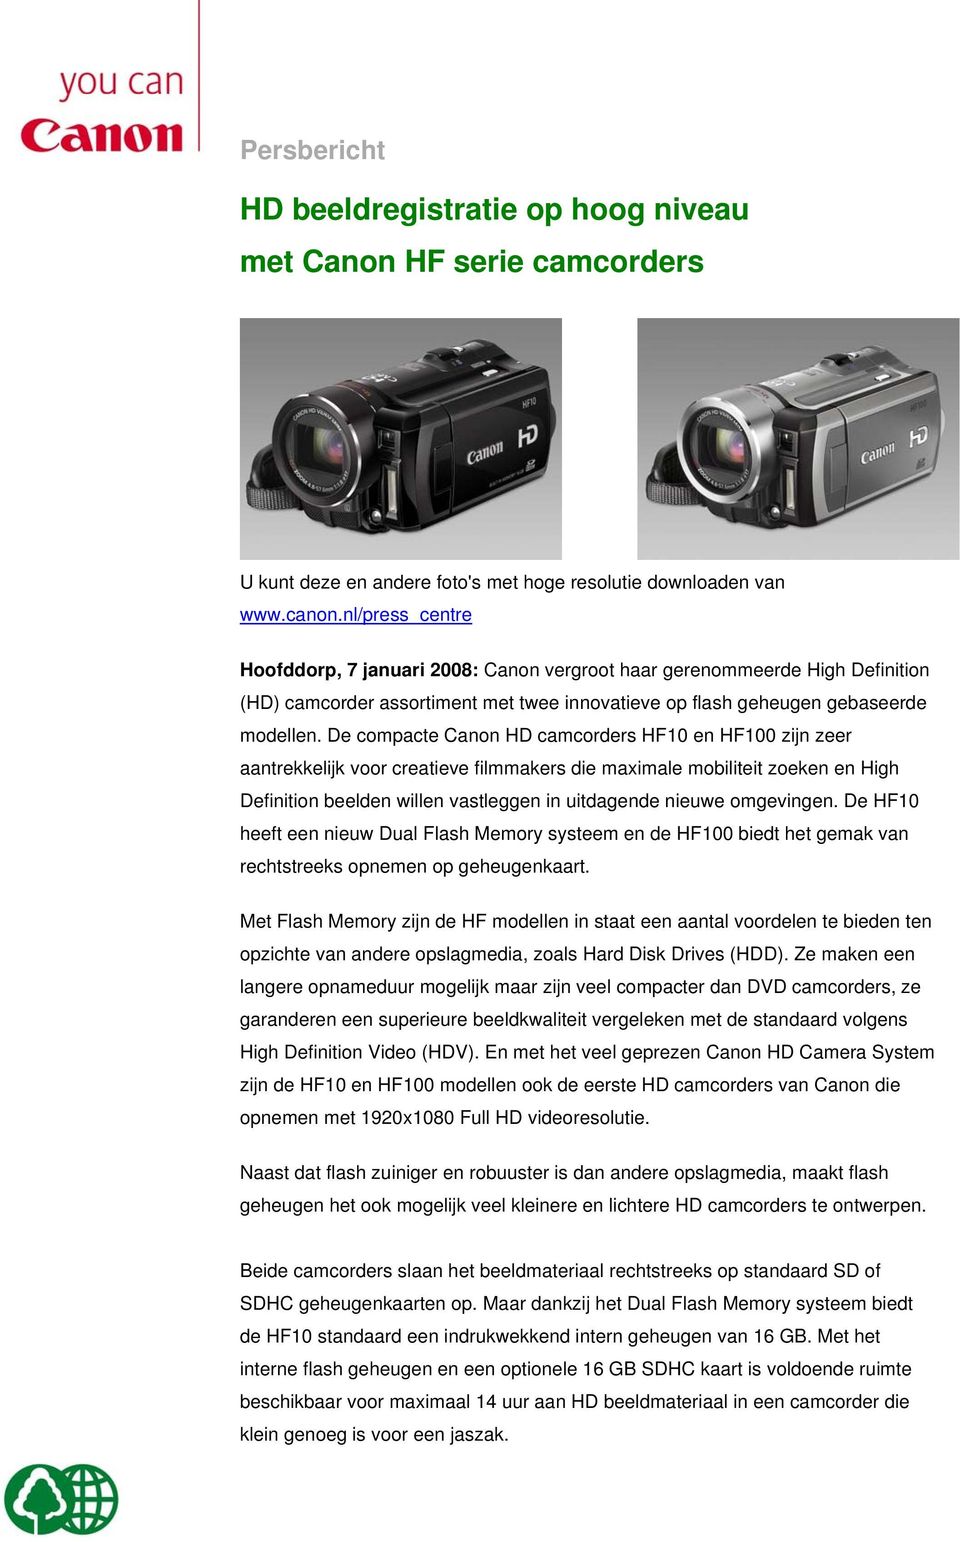 De compacte Canon HD camcorders HF10 en HF100 zijn zeer aantrekkelijk voor creatieve filmmakers die maximale mobiliteit zoeken en High Definition beelden willen vastleggen in uitdagende nieuwe